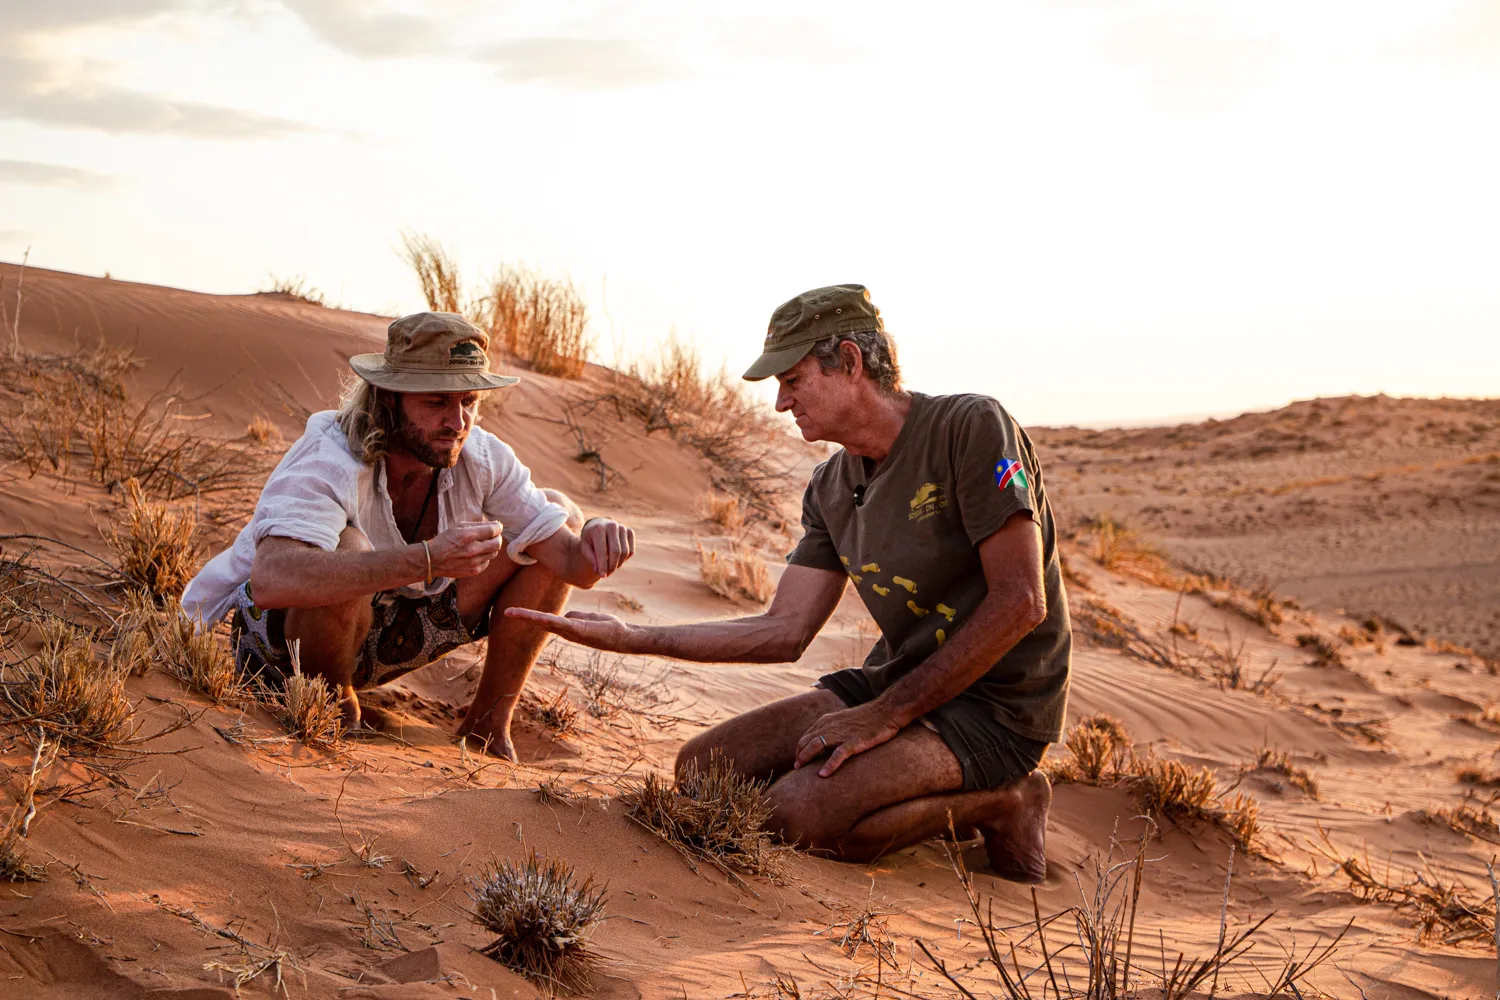 charlie in the namib oldest desert in the world stephanie louise zeejpg